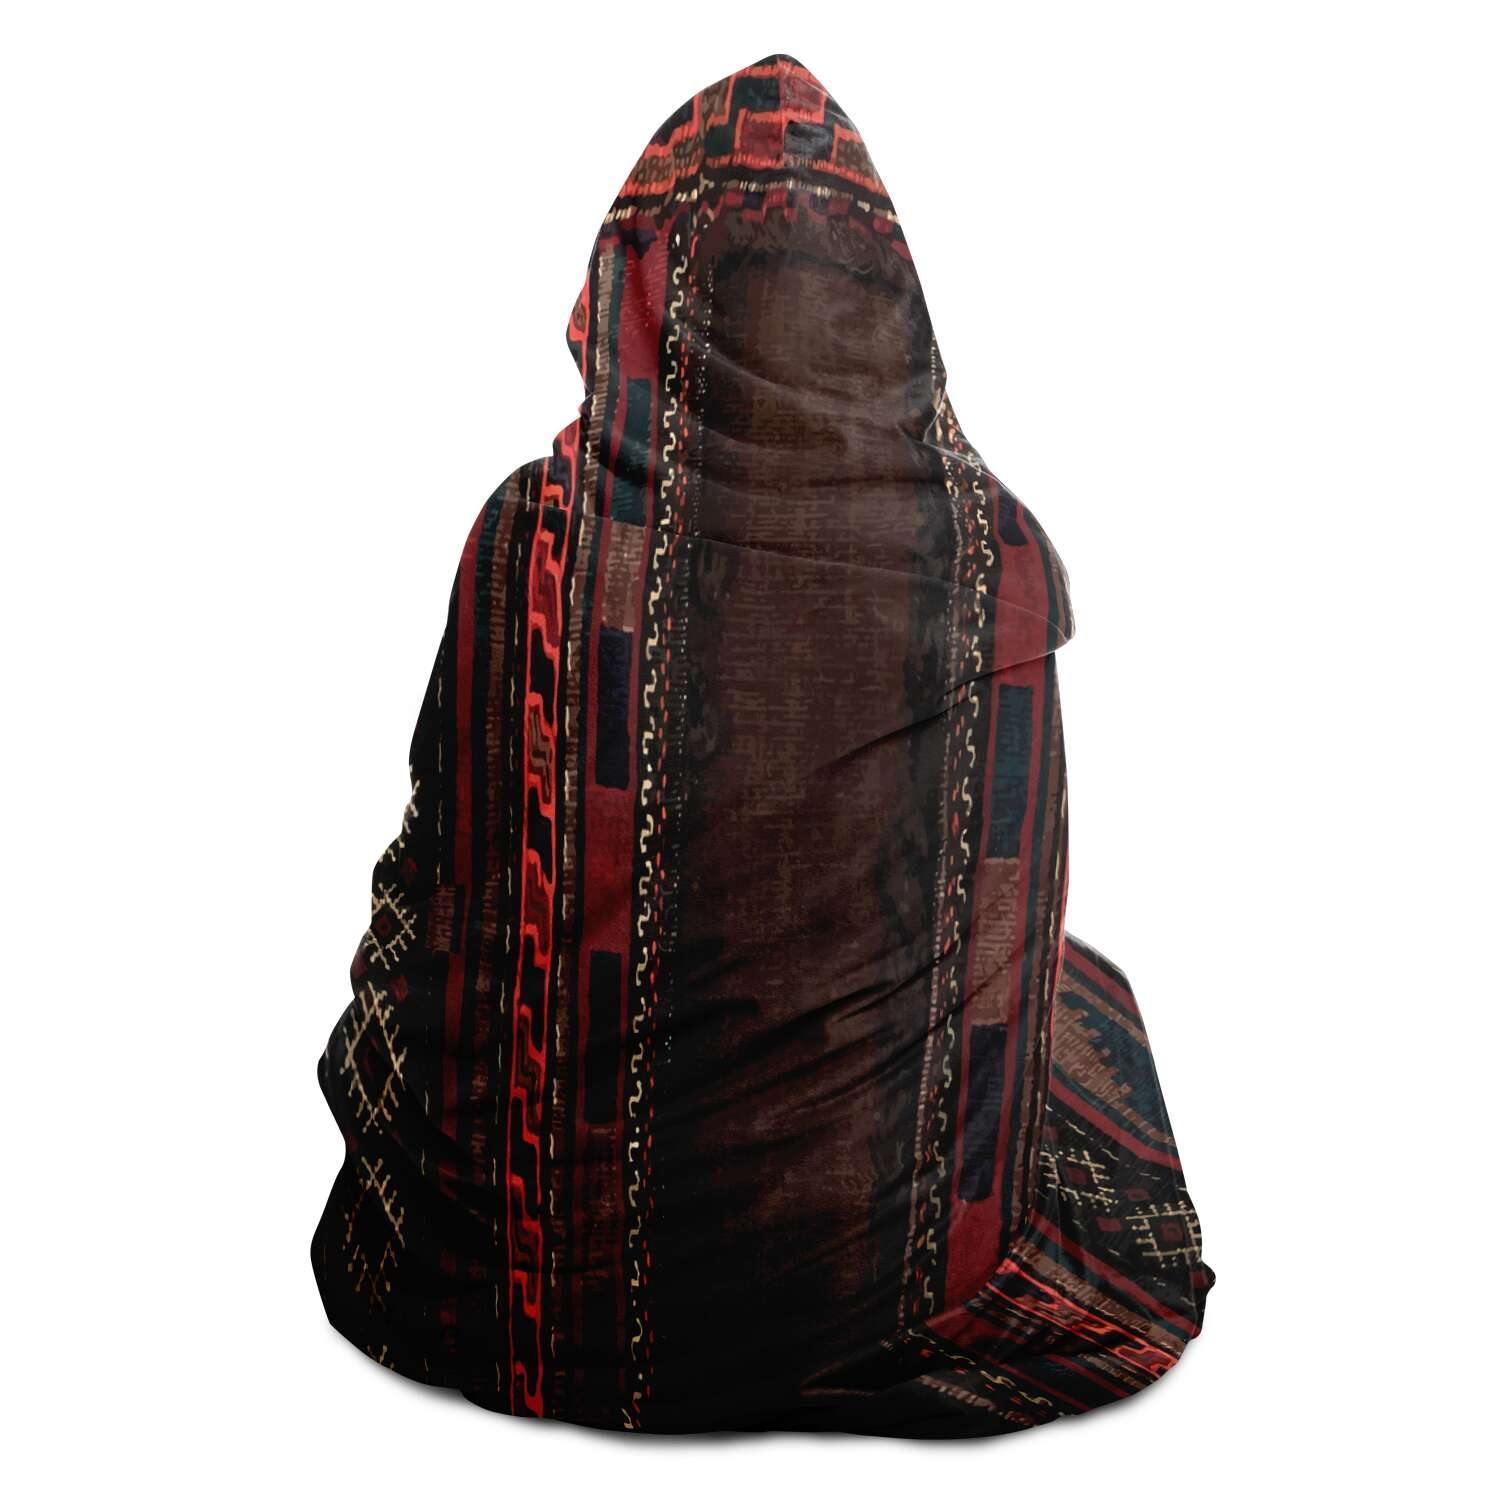 Hooded Blanket - AOP Antique Afghan Camel Bag Hooded Blanket